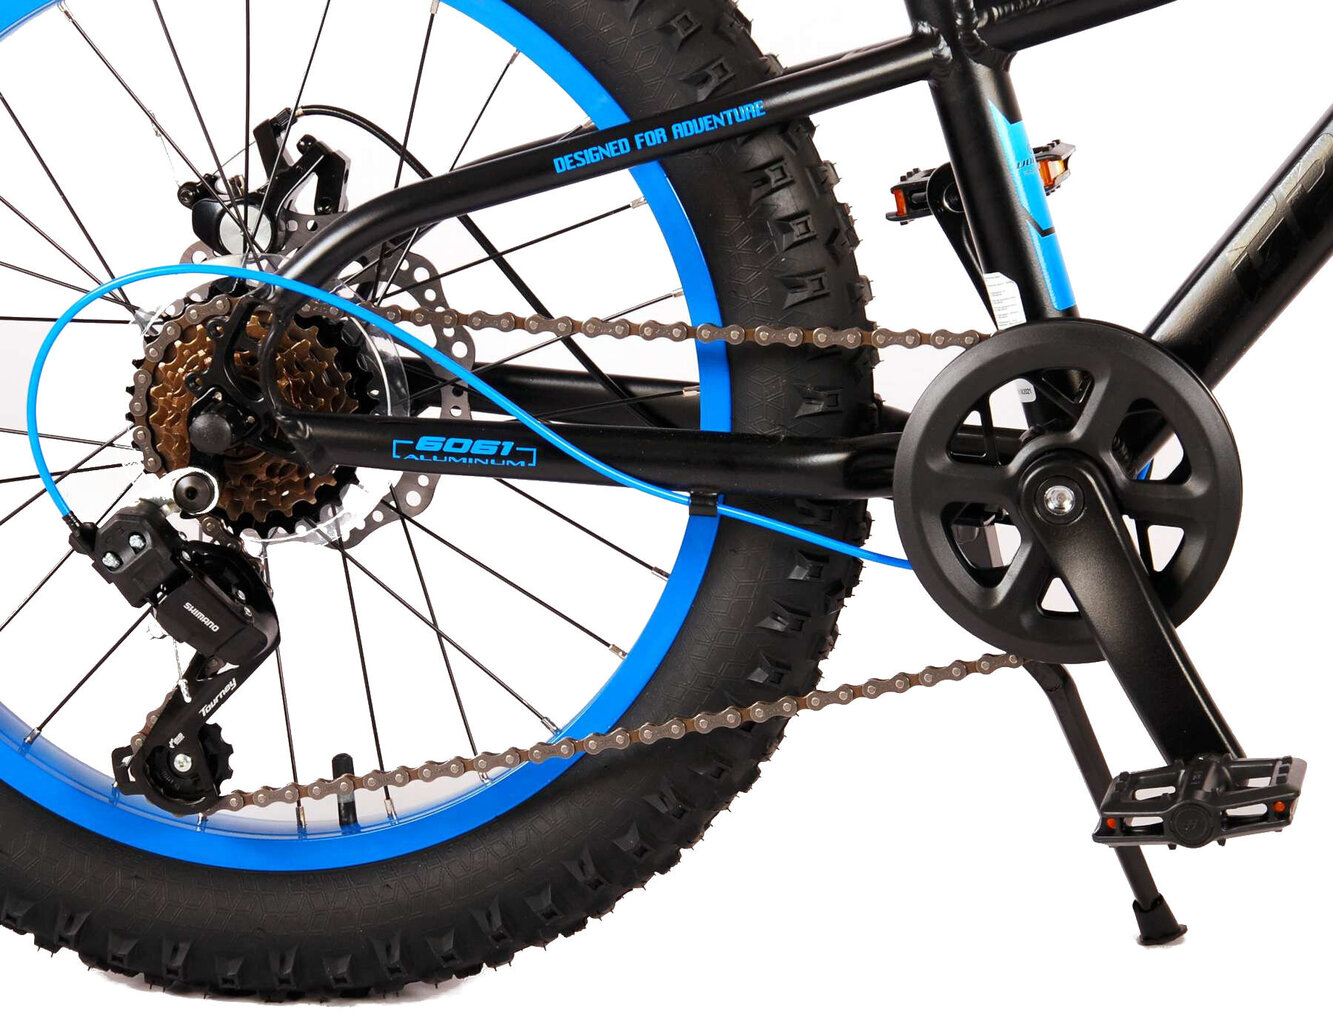 Vaikiškas dviratis Volare Gradient 20”, juodas/mėlynas kaina ir informacija | Dviračiai | pigu.lt